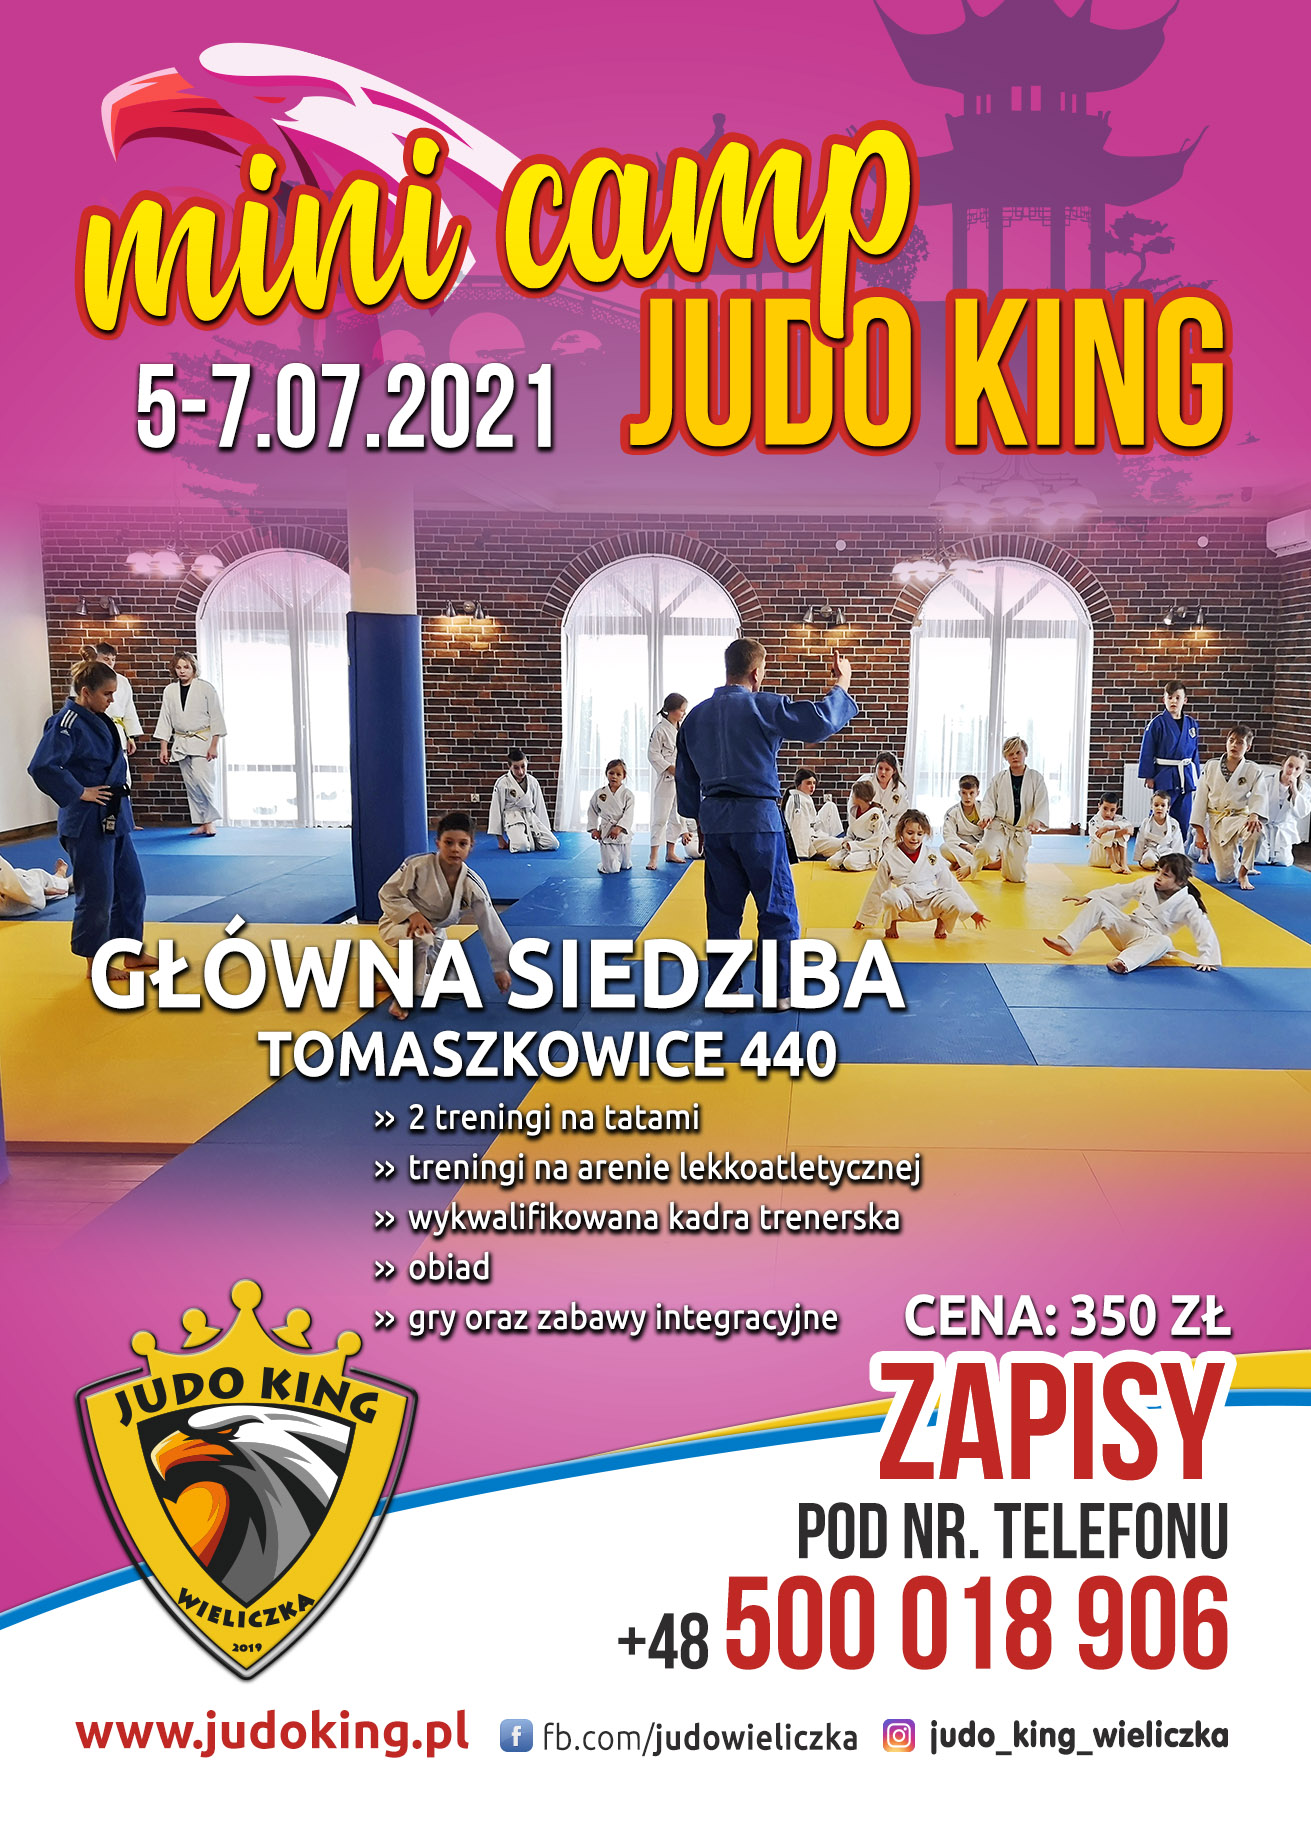 JUDO KING - Ulotka SUMMER JUDO KING CAMP 2021_awers